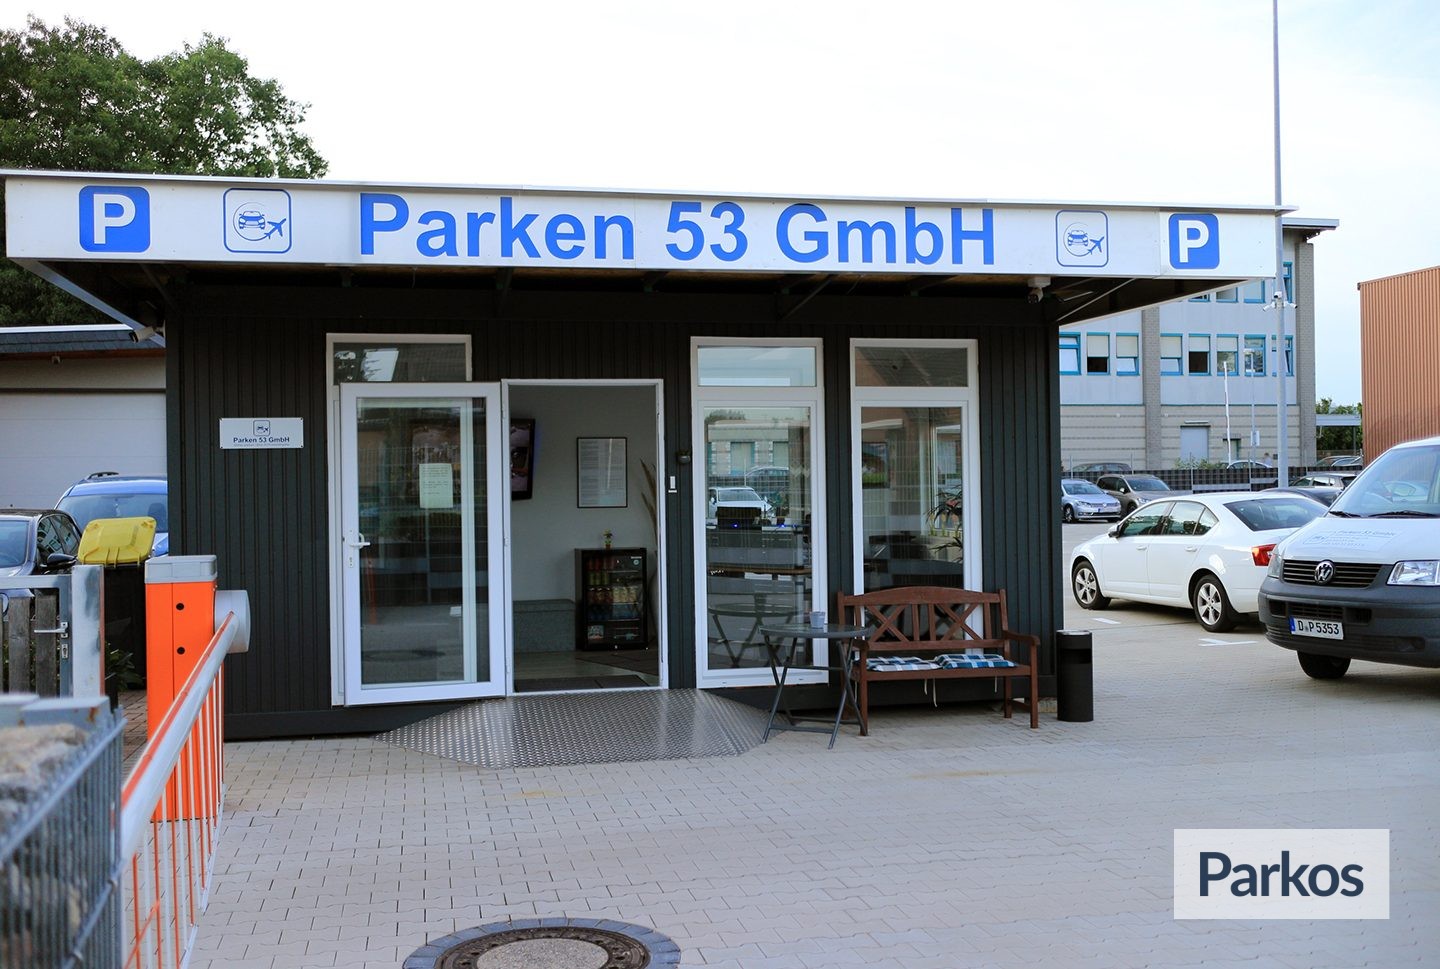 Parken 53 GmbH - Düsseldorf Airport Parking - picture 1